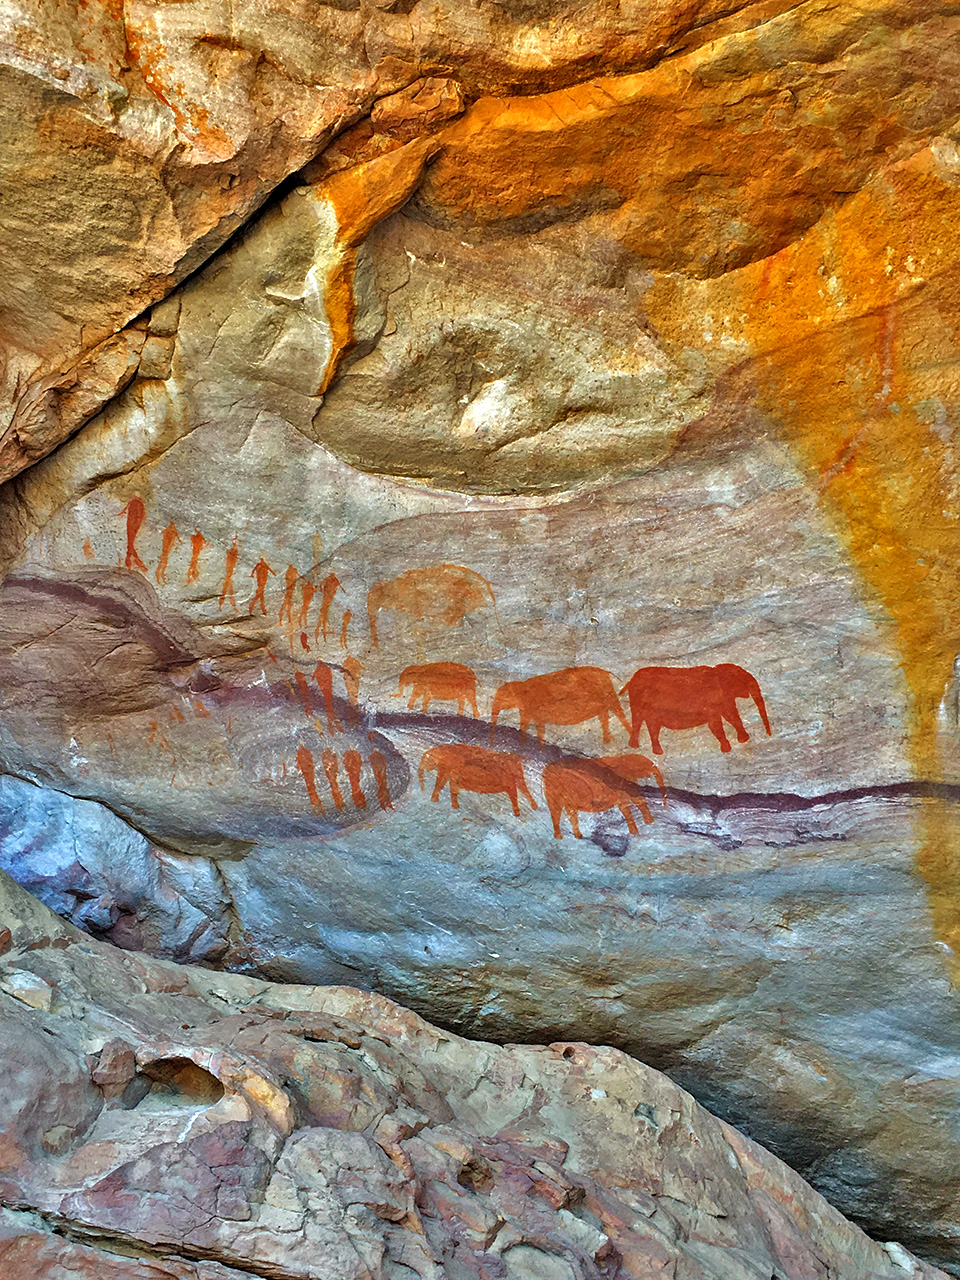 Rock Art de Cederberg, que fica perto das “Stadsaal Caves”, cavernas que também fazem a gente imaginar como era a vida por lá há tantos milênios atrás.